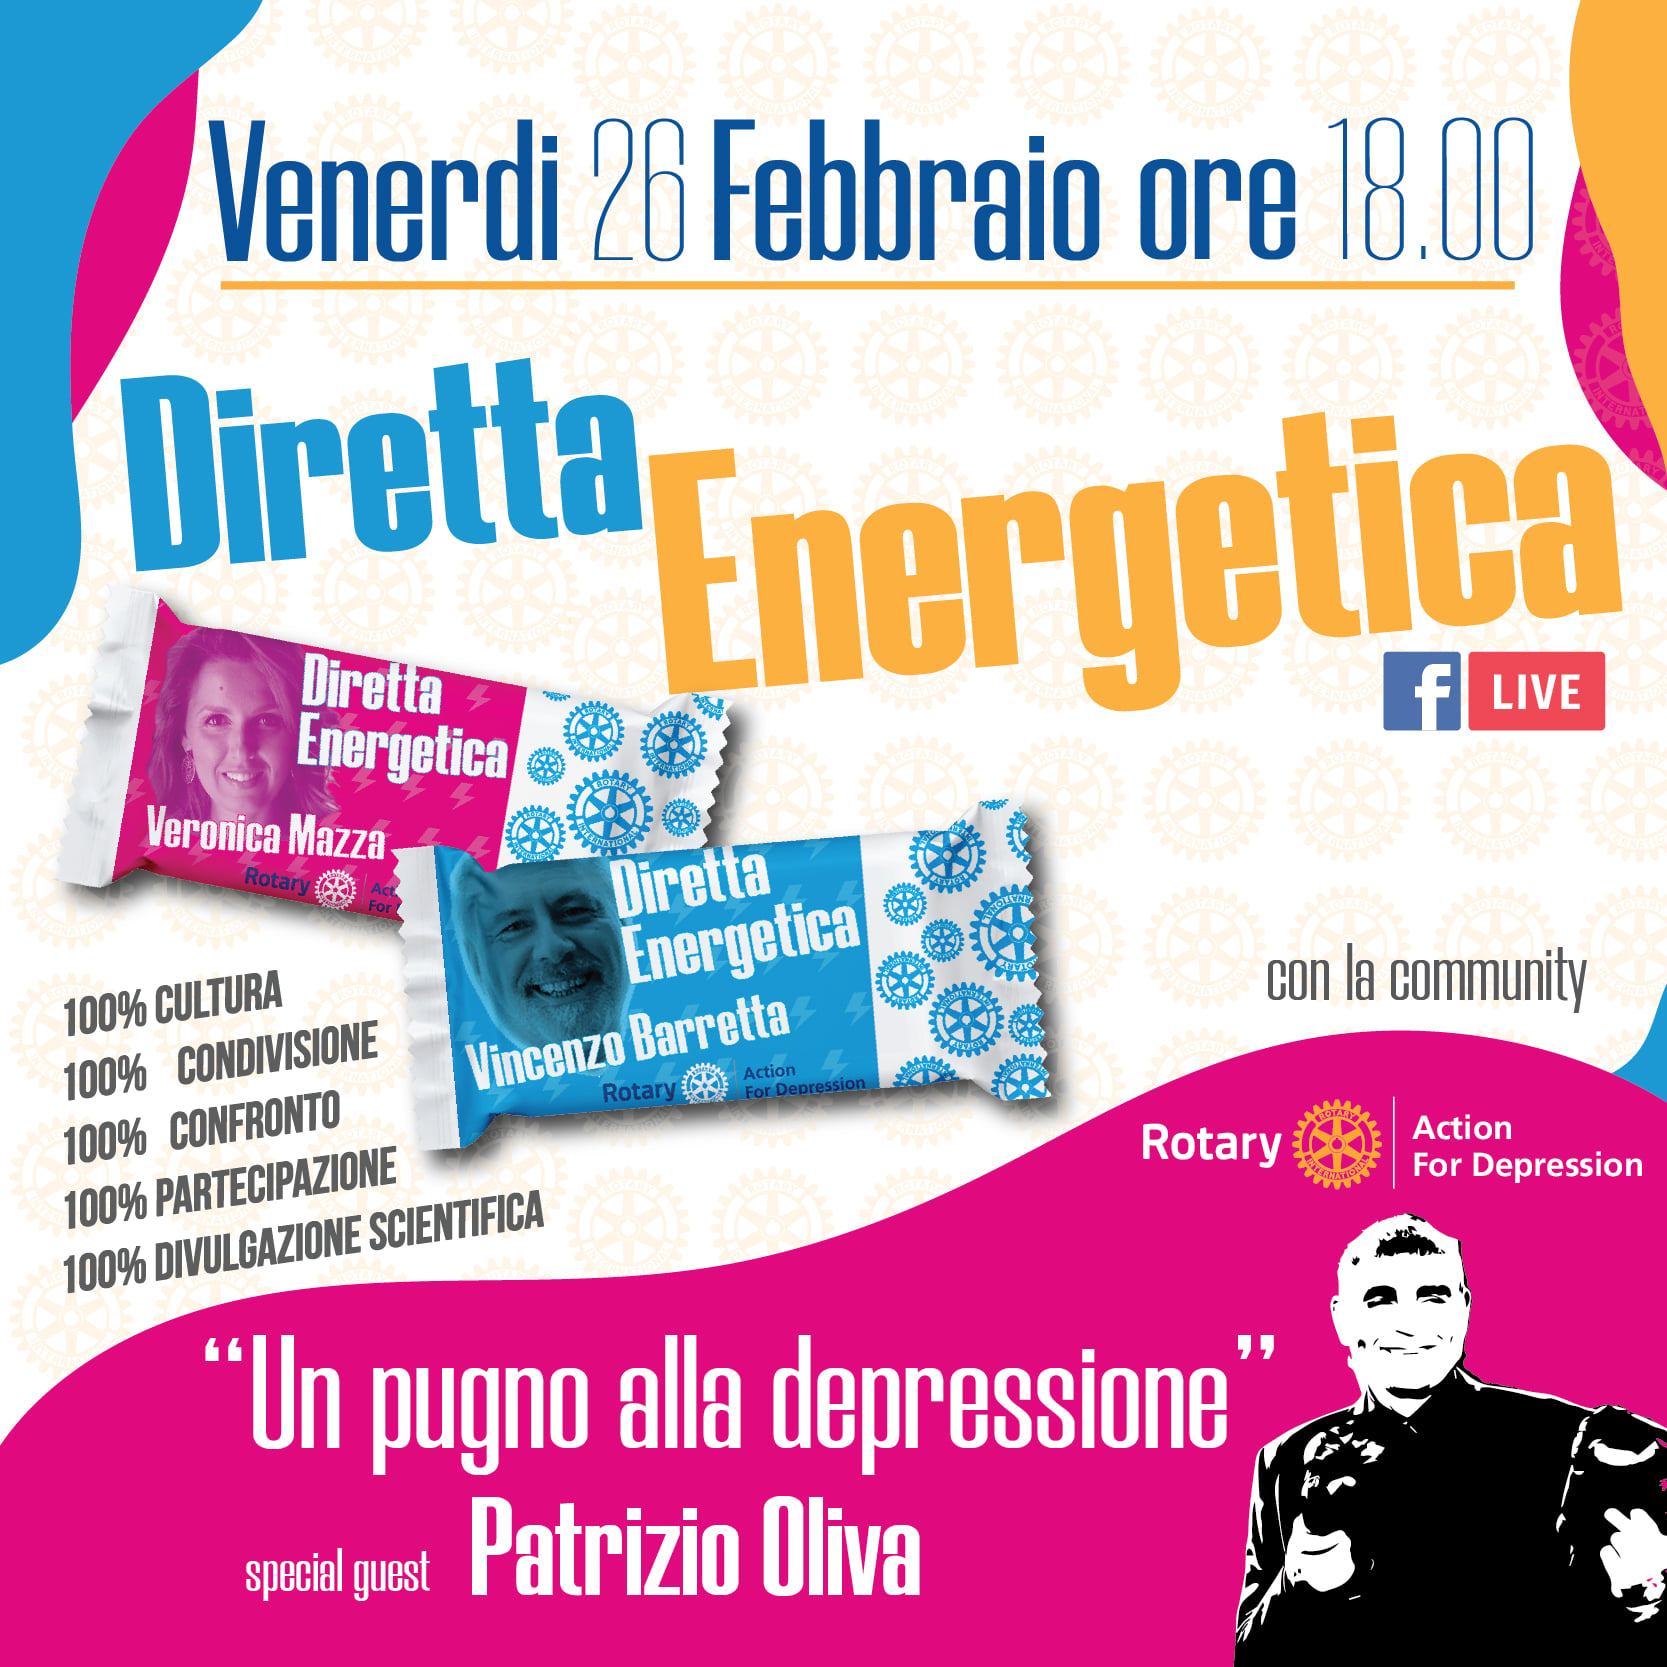 Rotary Action for Depression – “Diretta energetica” il 26 febbraio, ore 18.00 con Patrizio Oliva